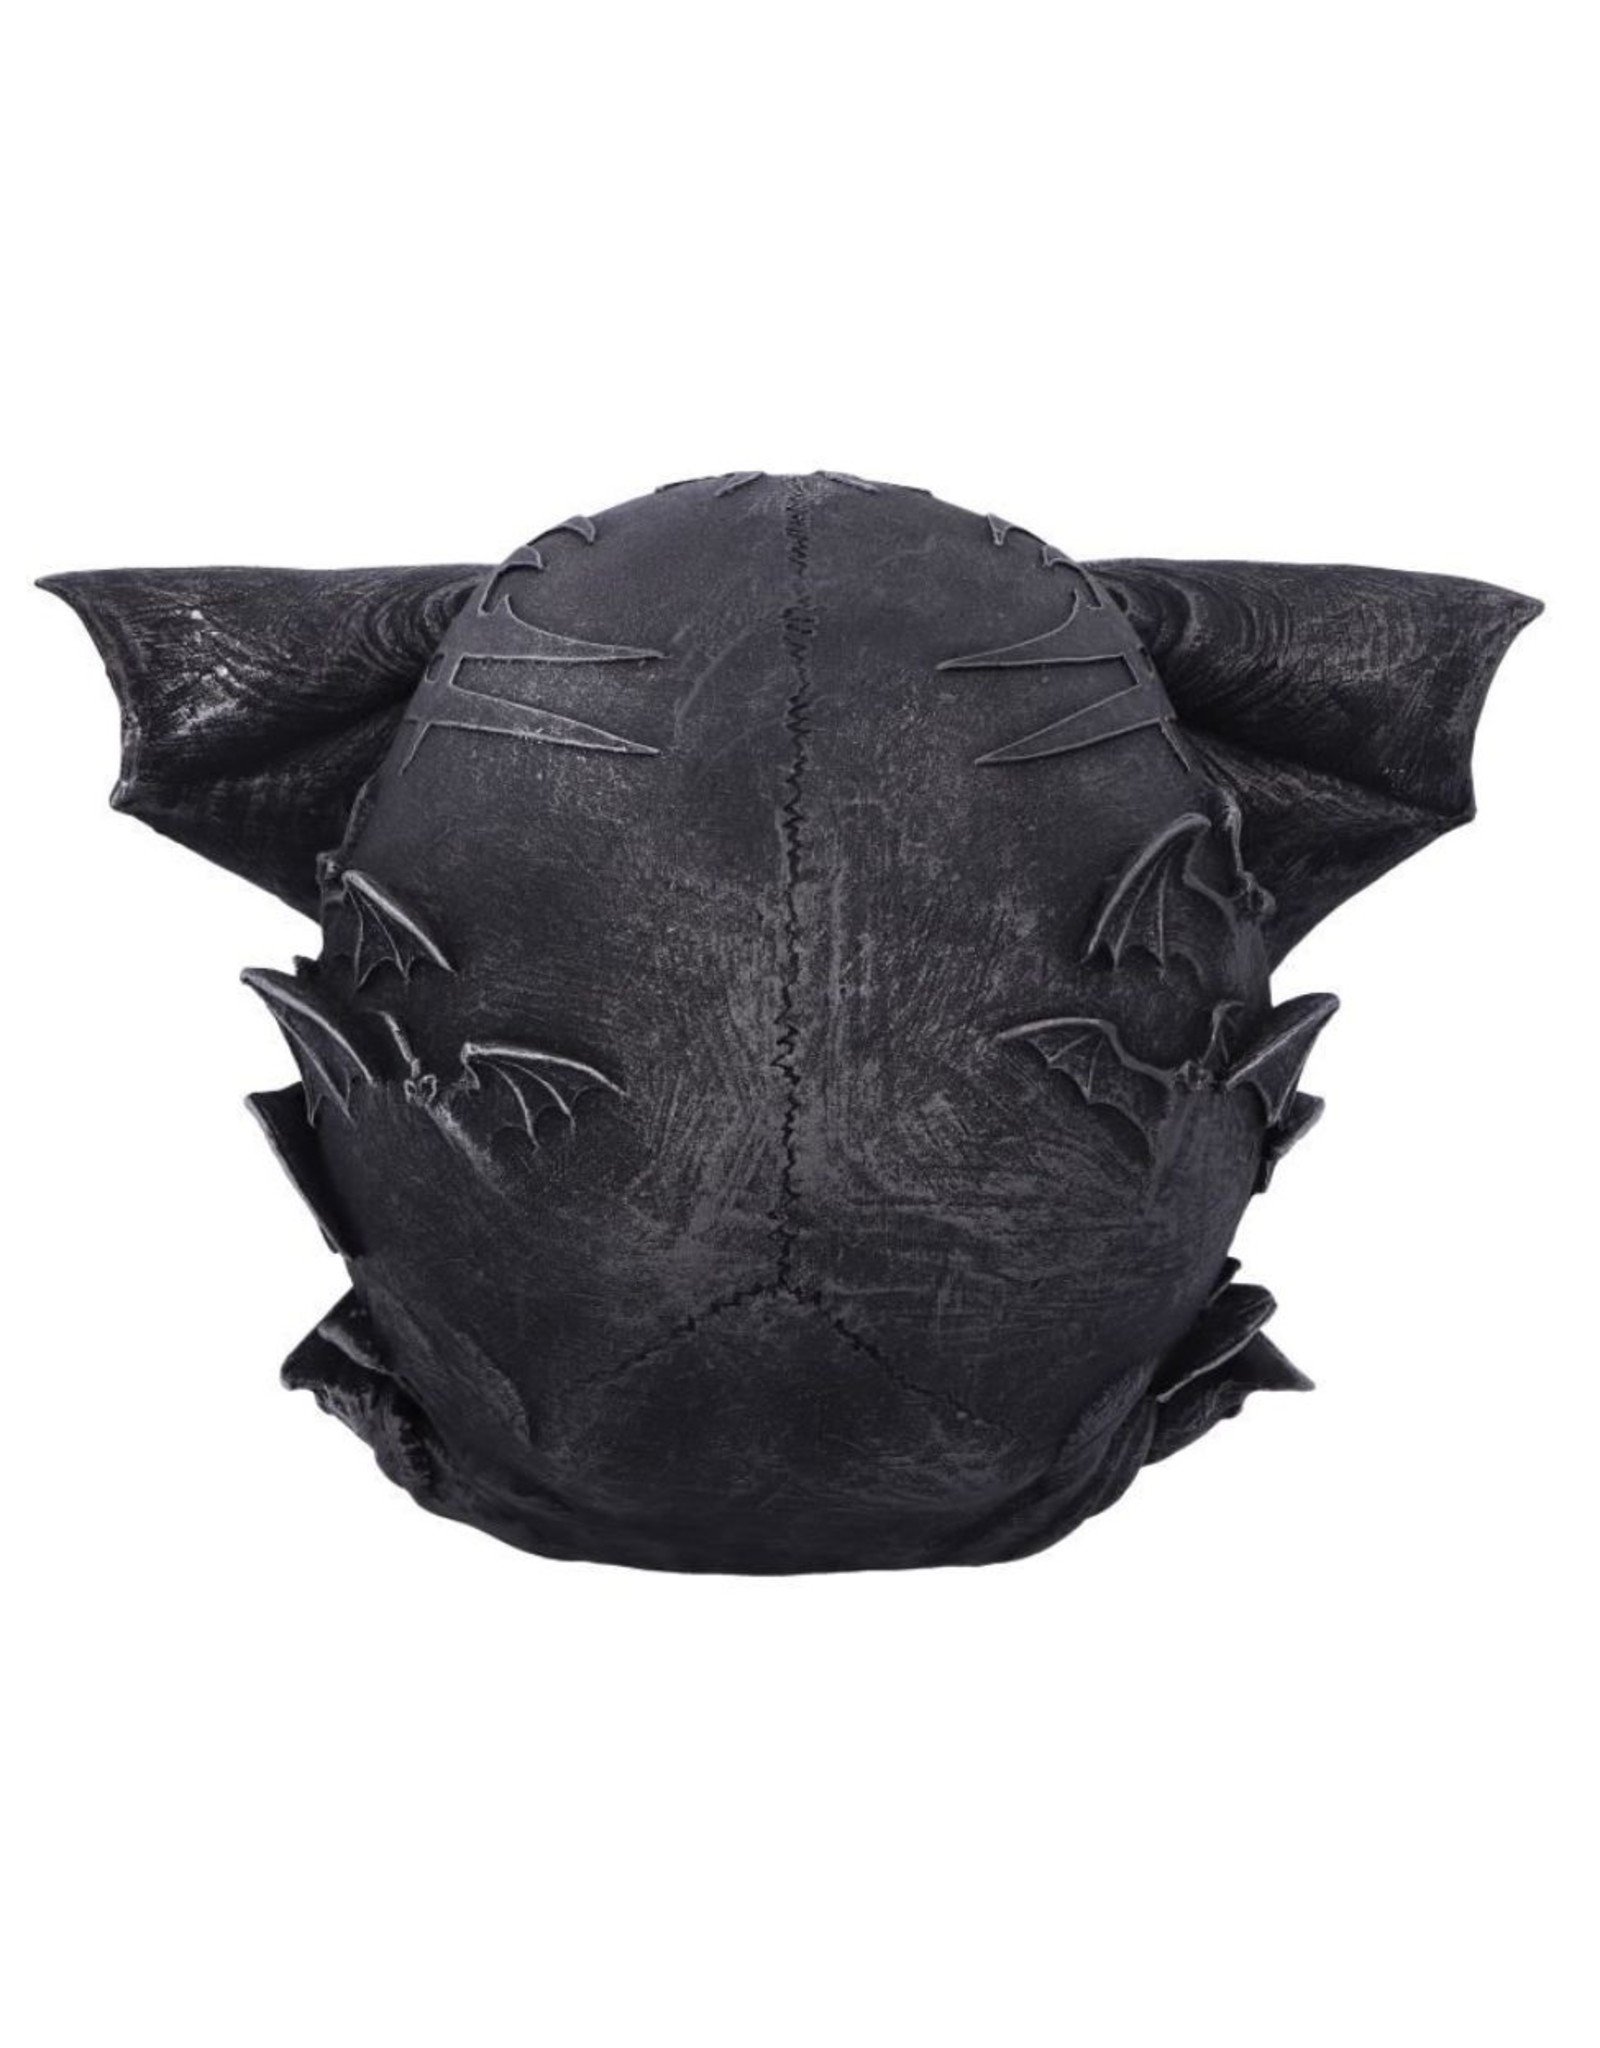 Ske - Suprême LV Skull Bat - Catawiki